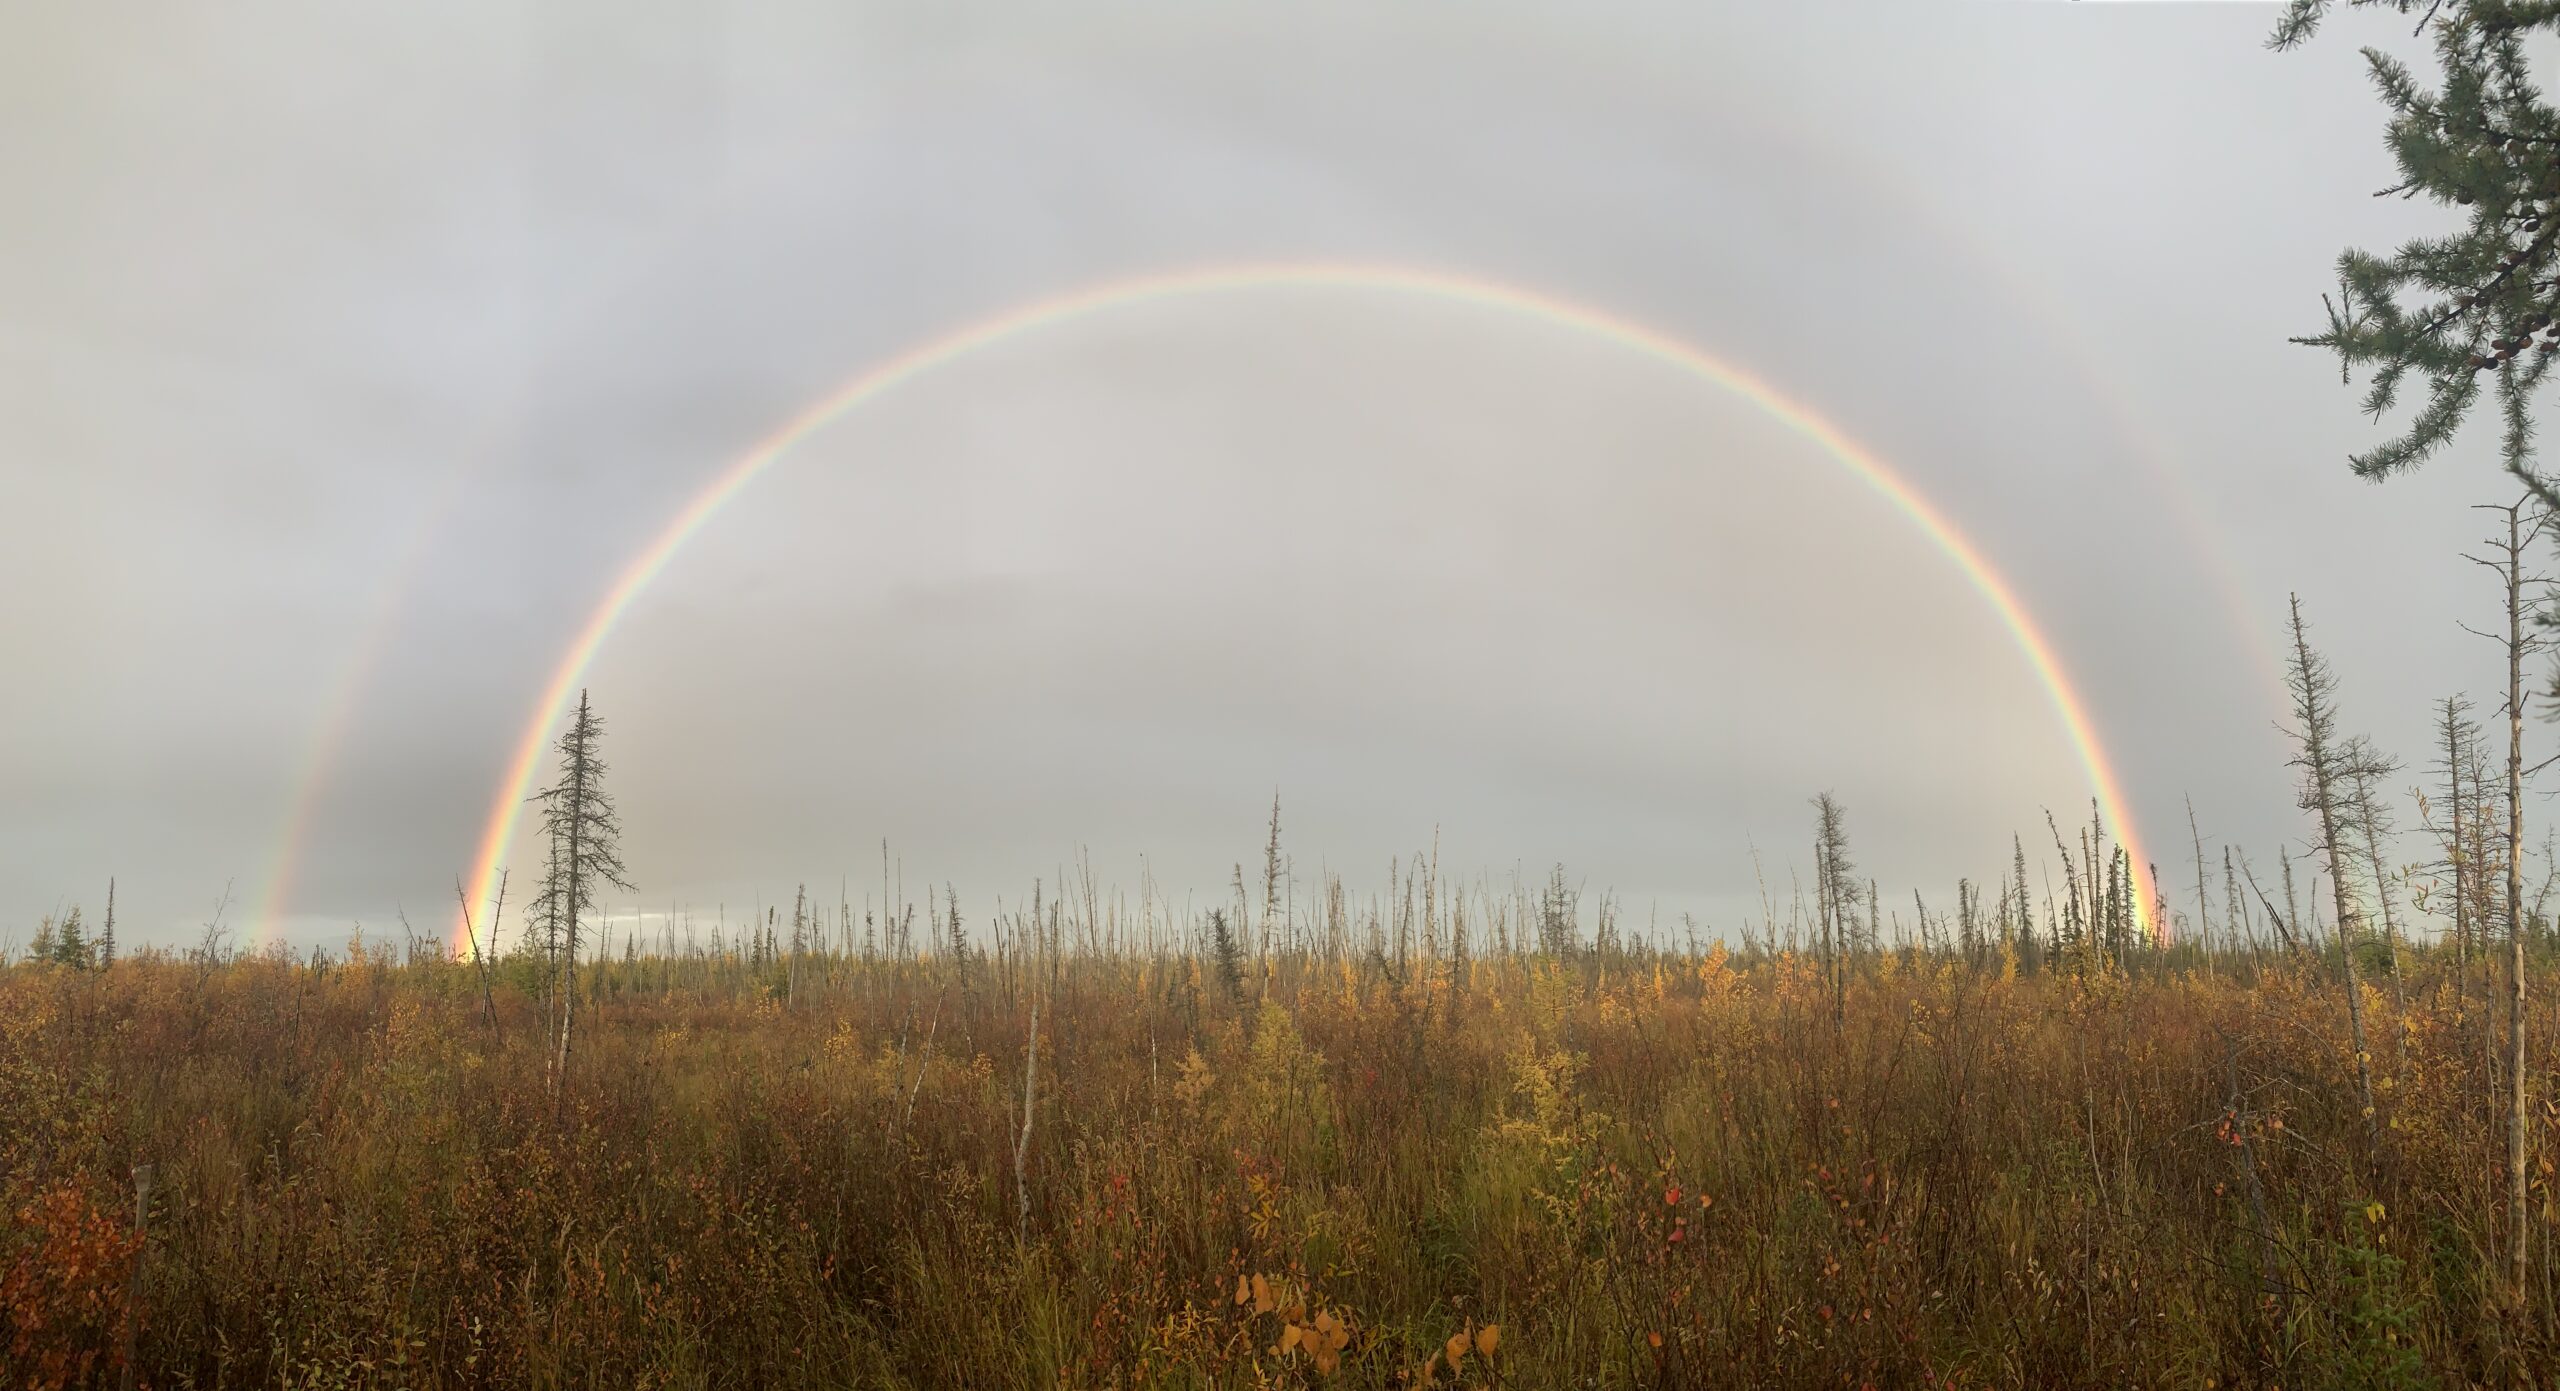 An evening rain shower leaves a double rainbow